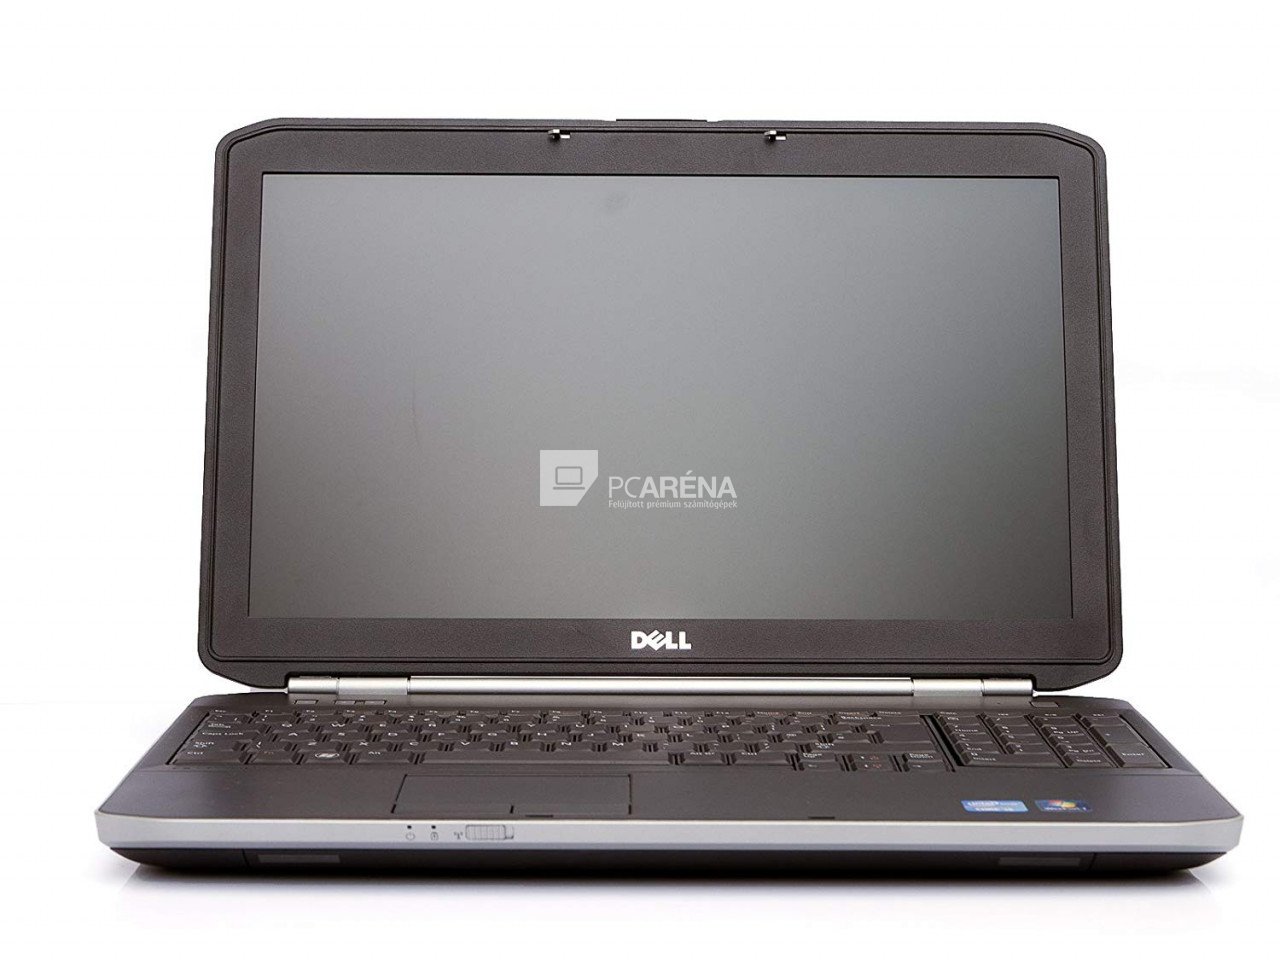 Dell Latitude E5520 laptop